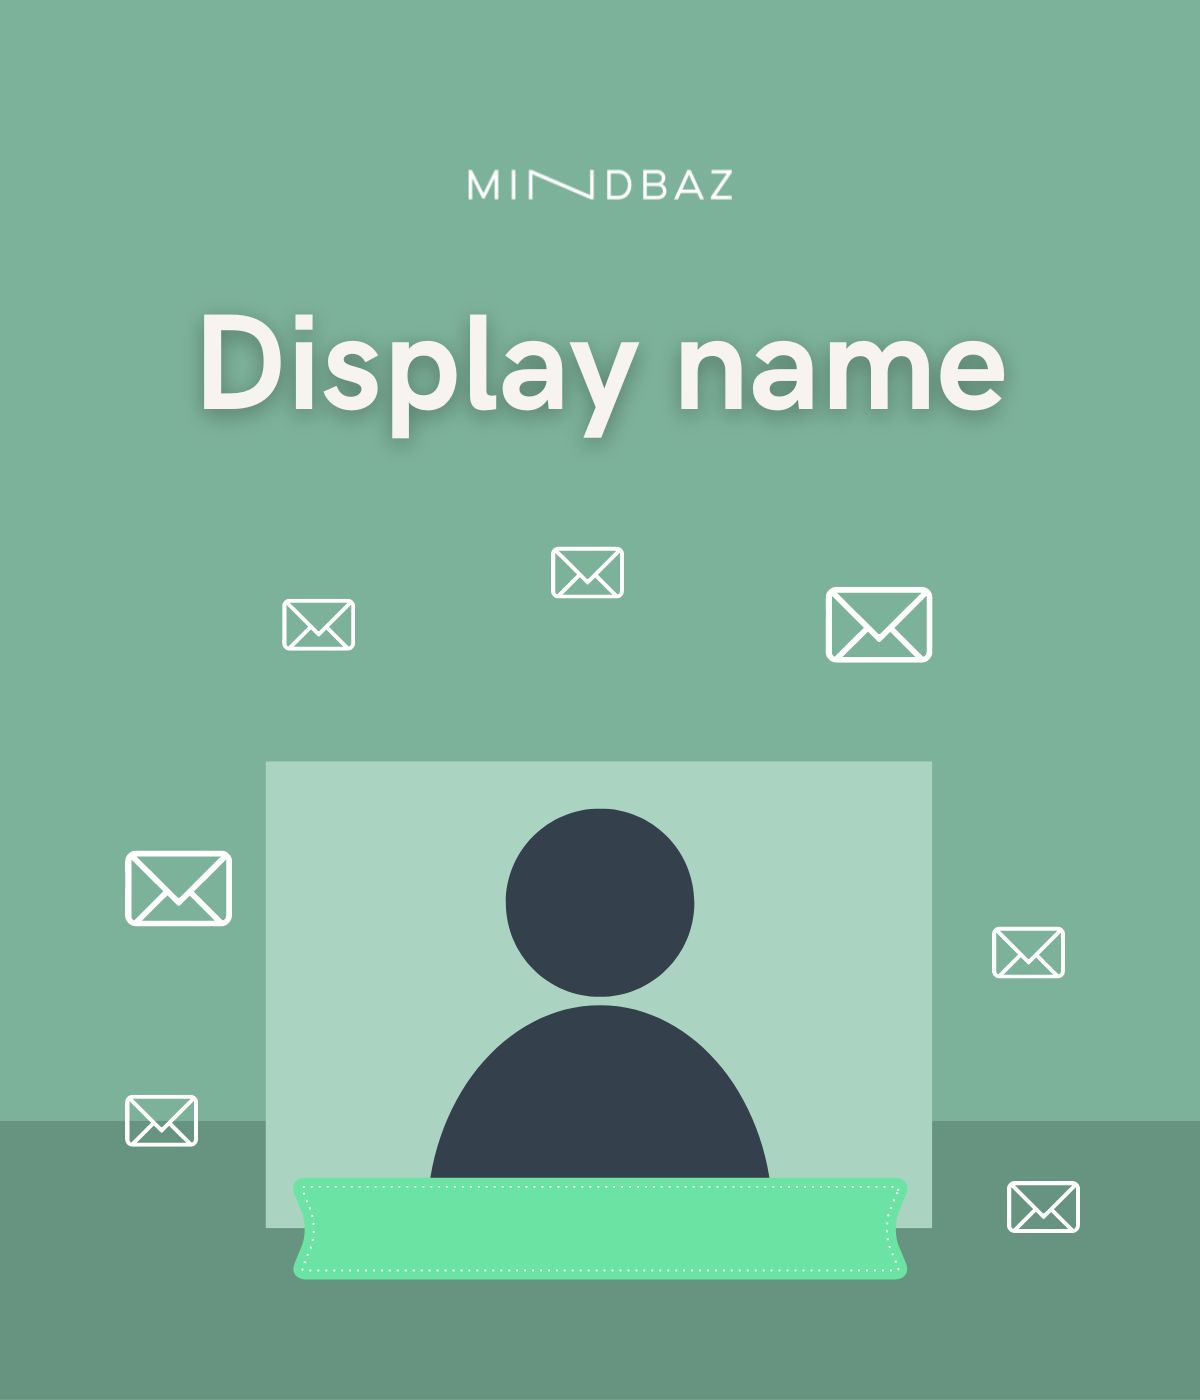 promo_display_name_delivrabilite_mindbaz